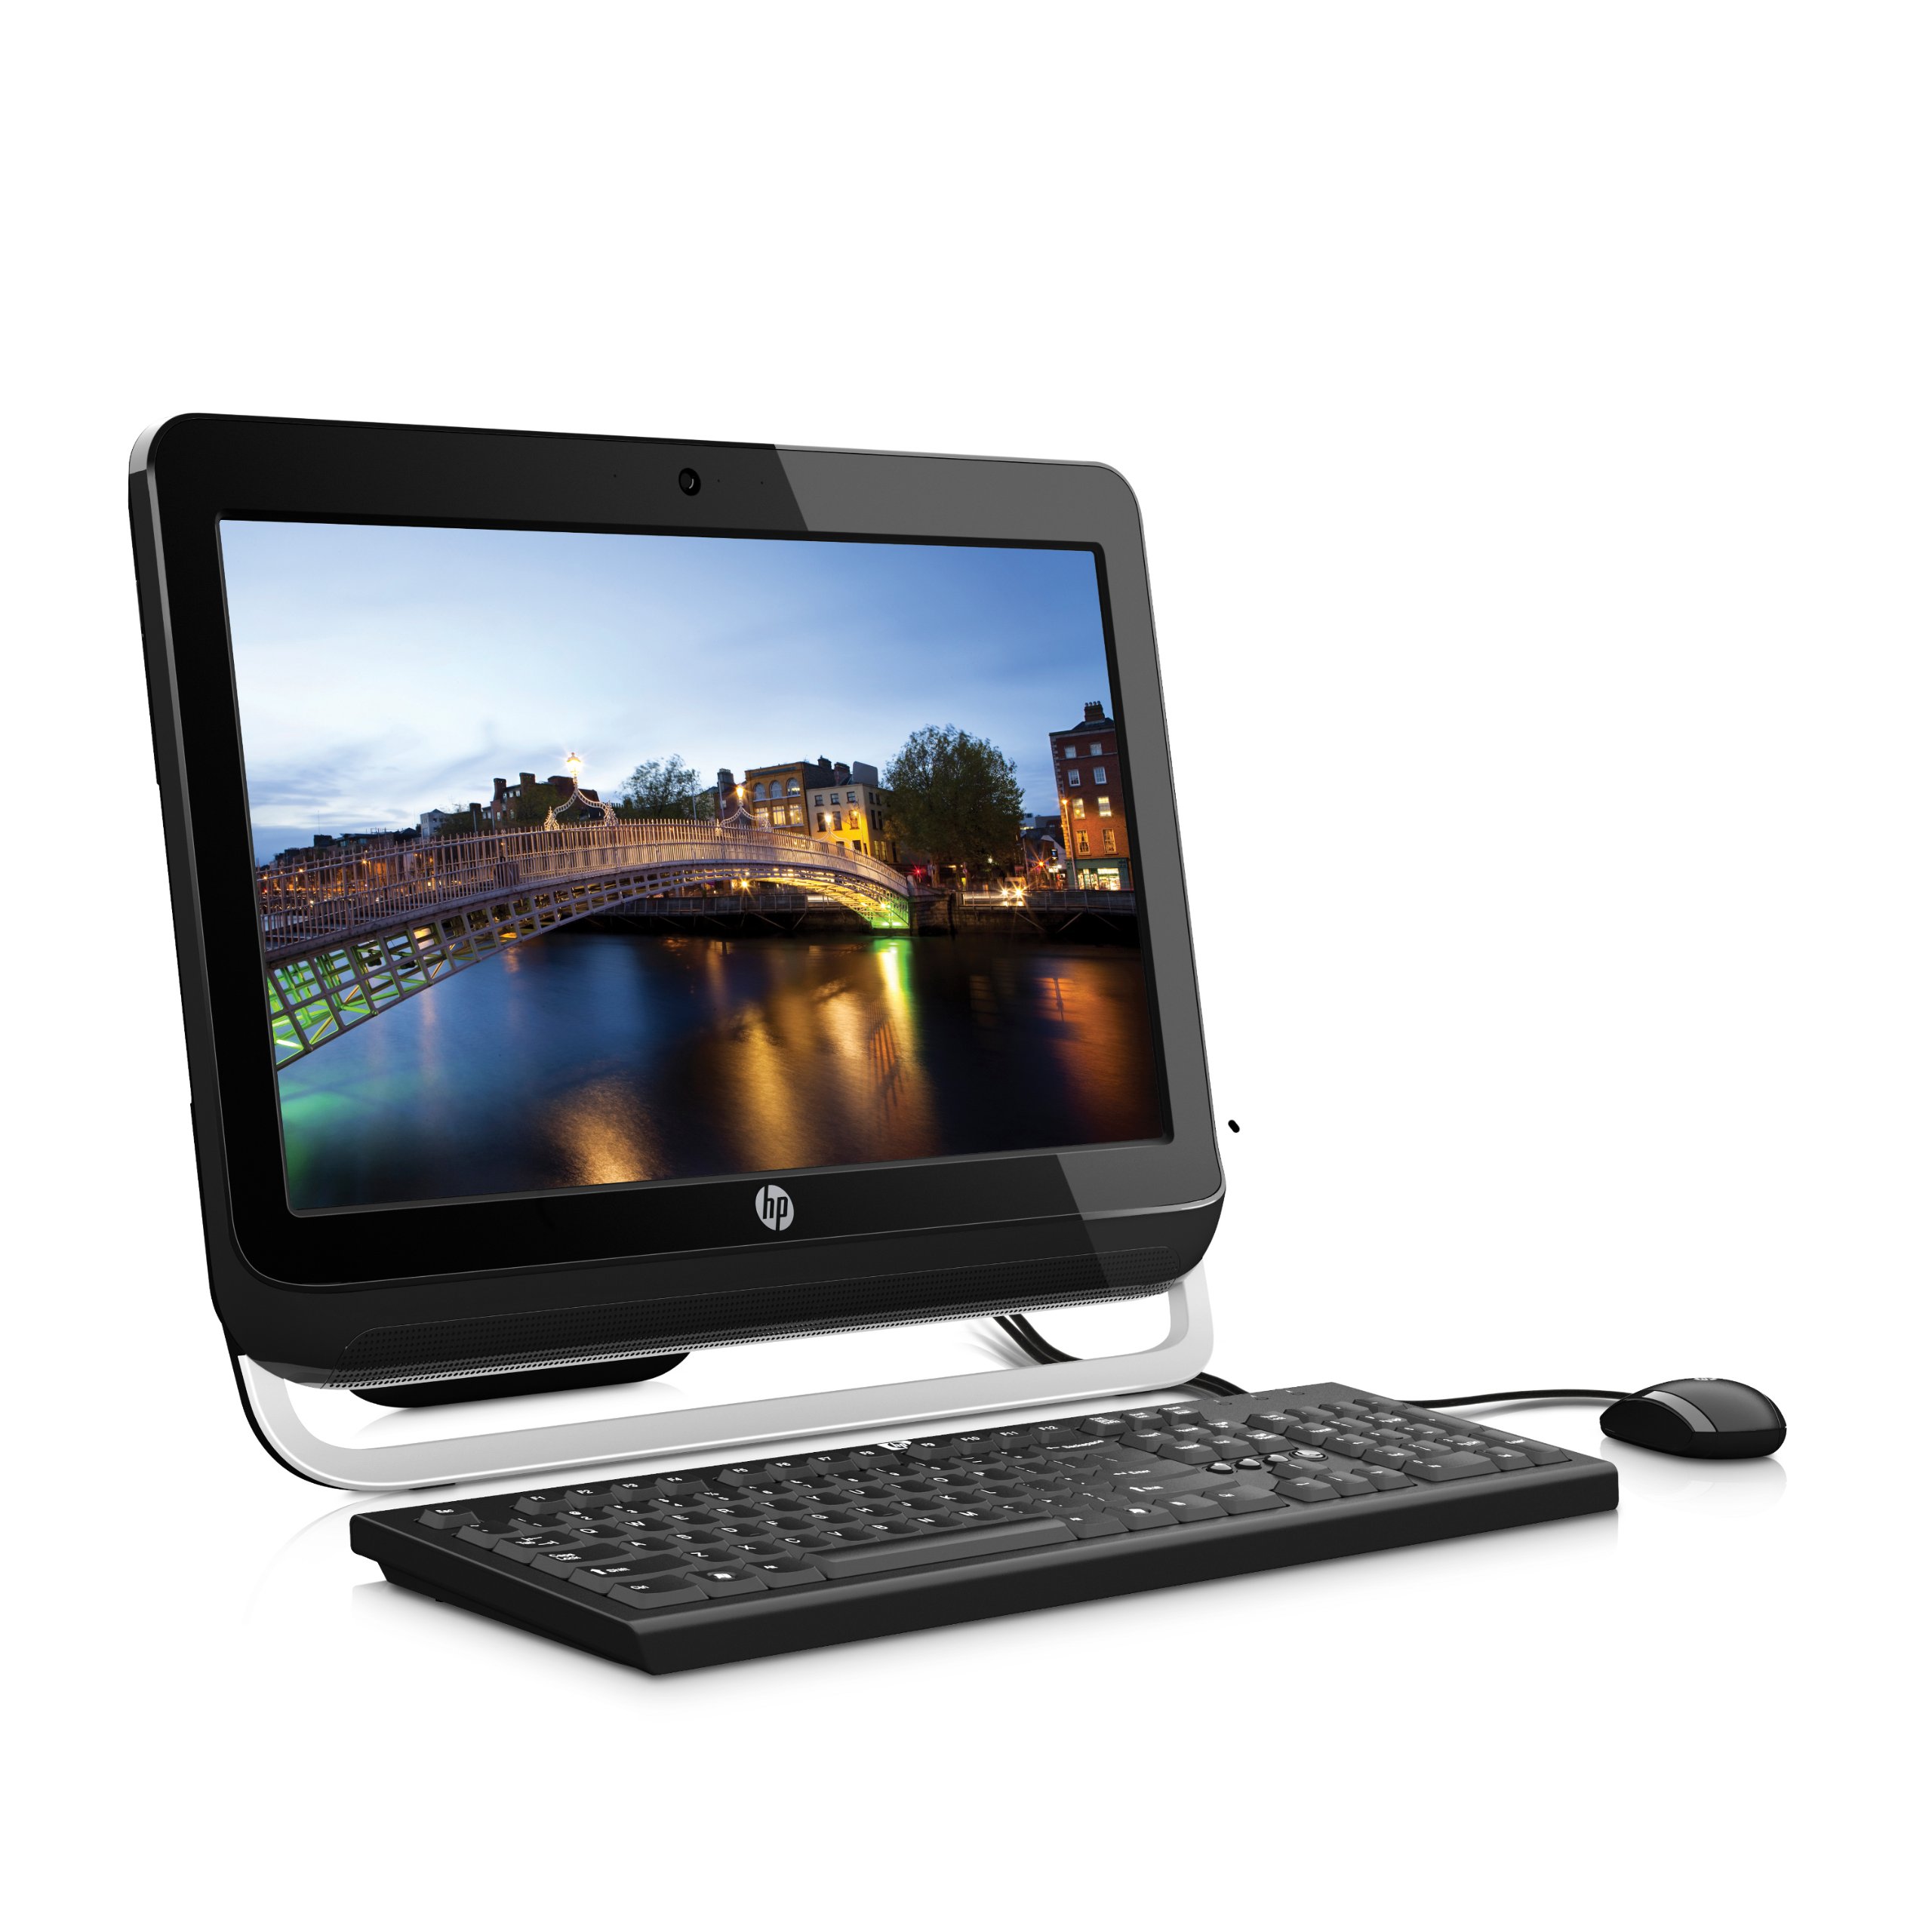 Omni 120-1112la Desktop PC